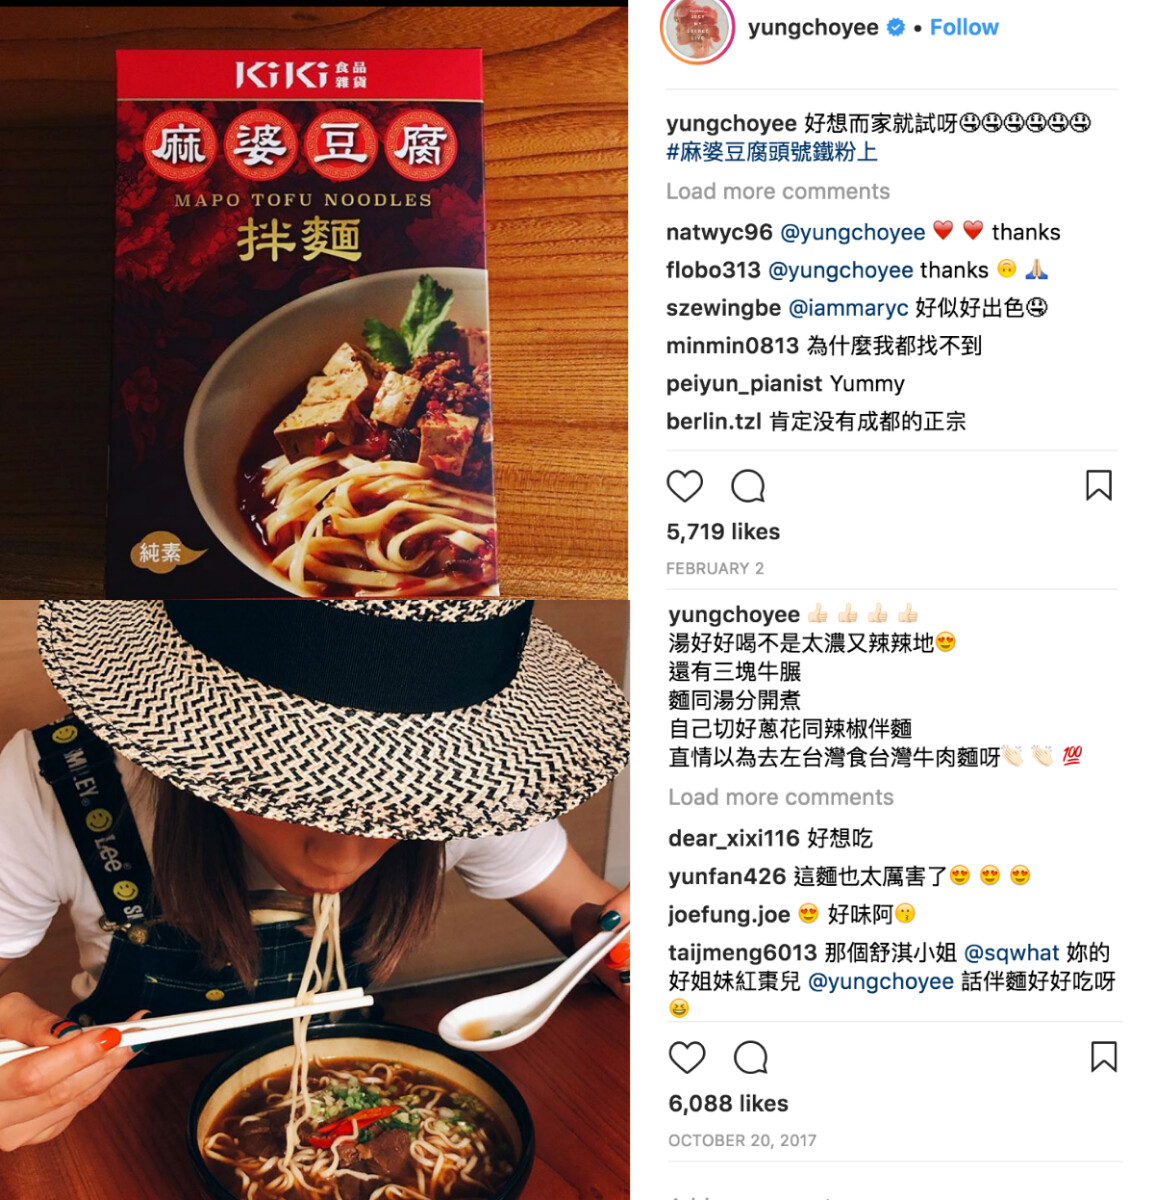 lifestyle-KiKi-kikinoodles-spicy-healthy-vegetarian-buy-online-hk-taiwan